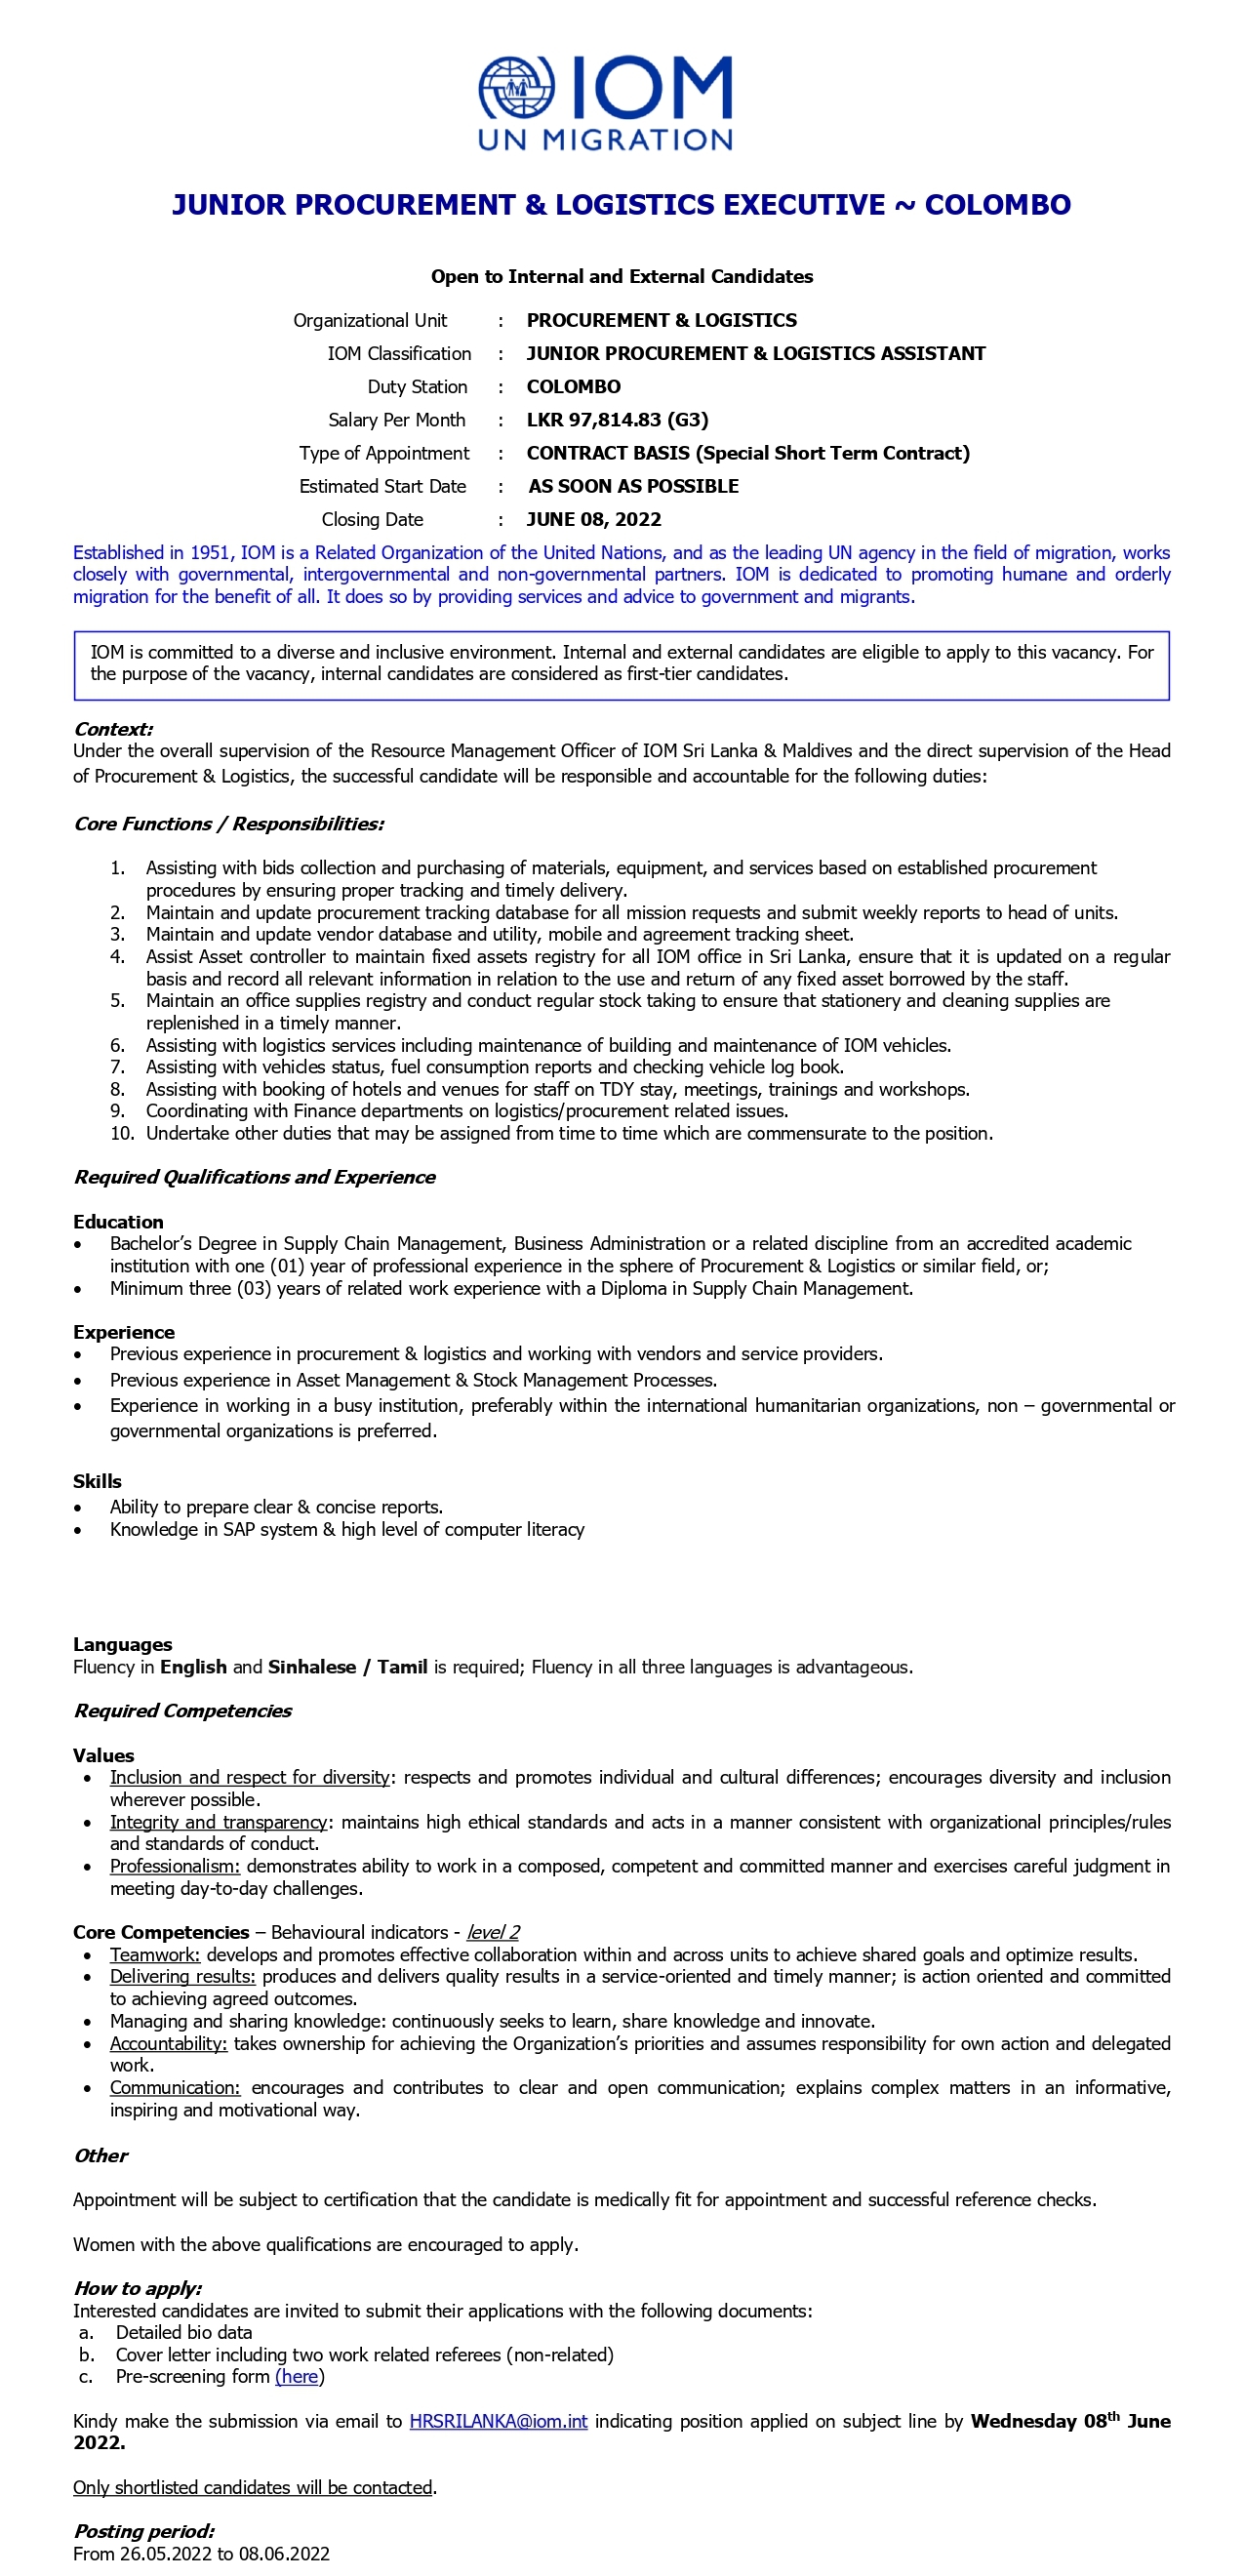 Junior Procurement & Logistic Executive Vacancies - International Organization for Migration Jobs Vacancies